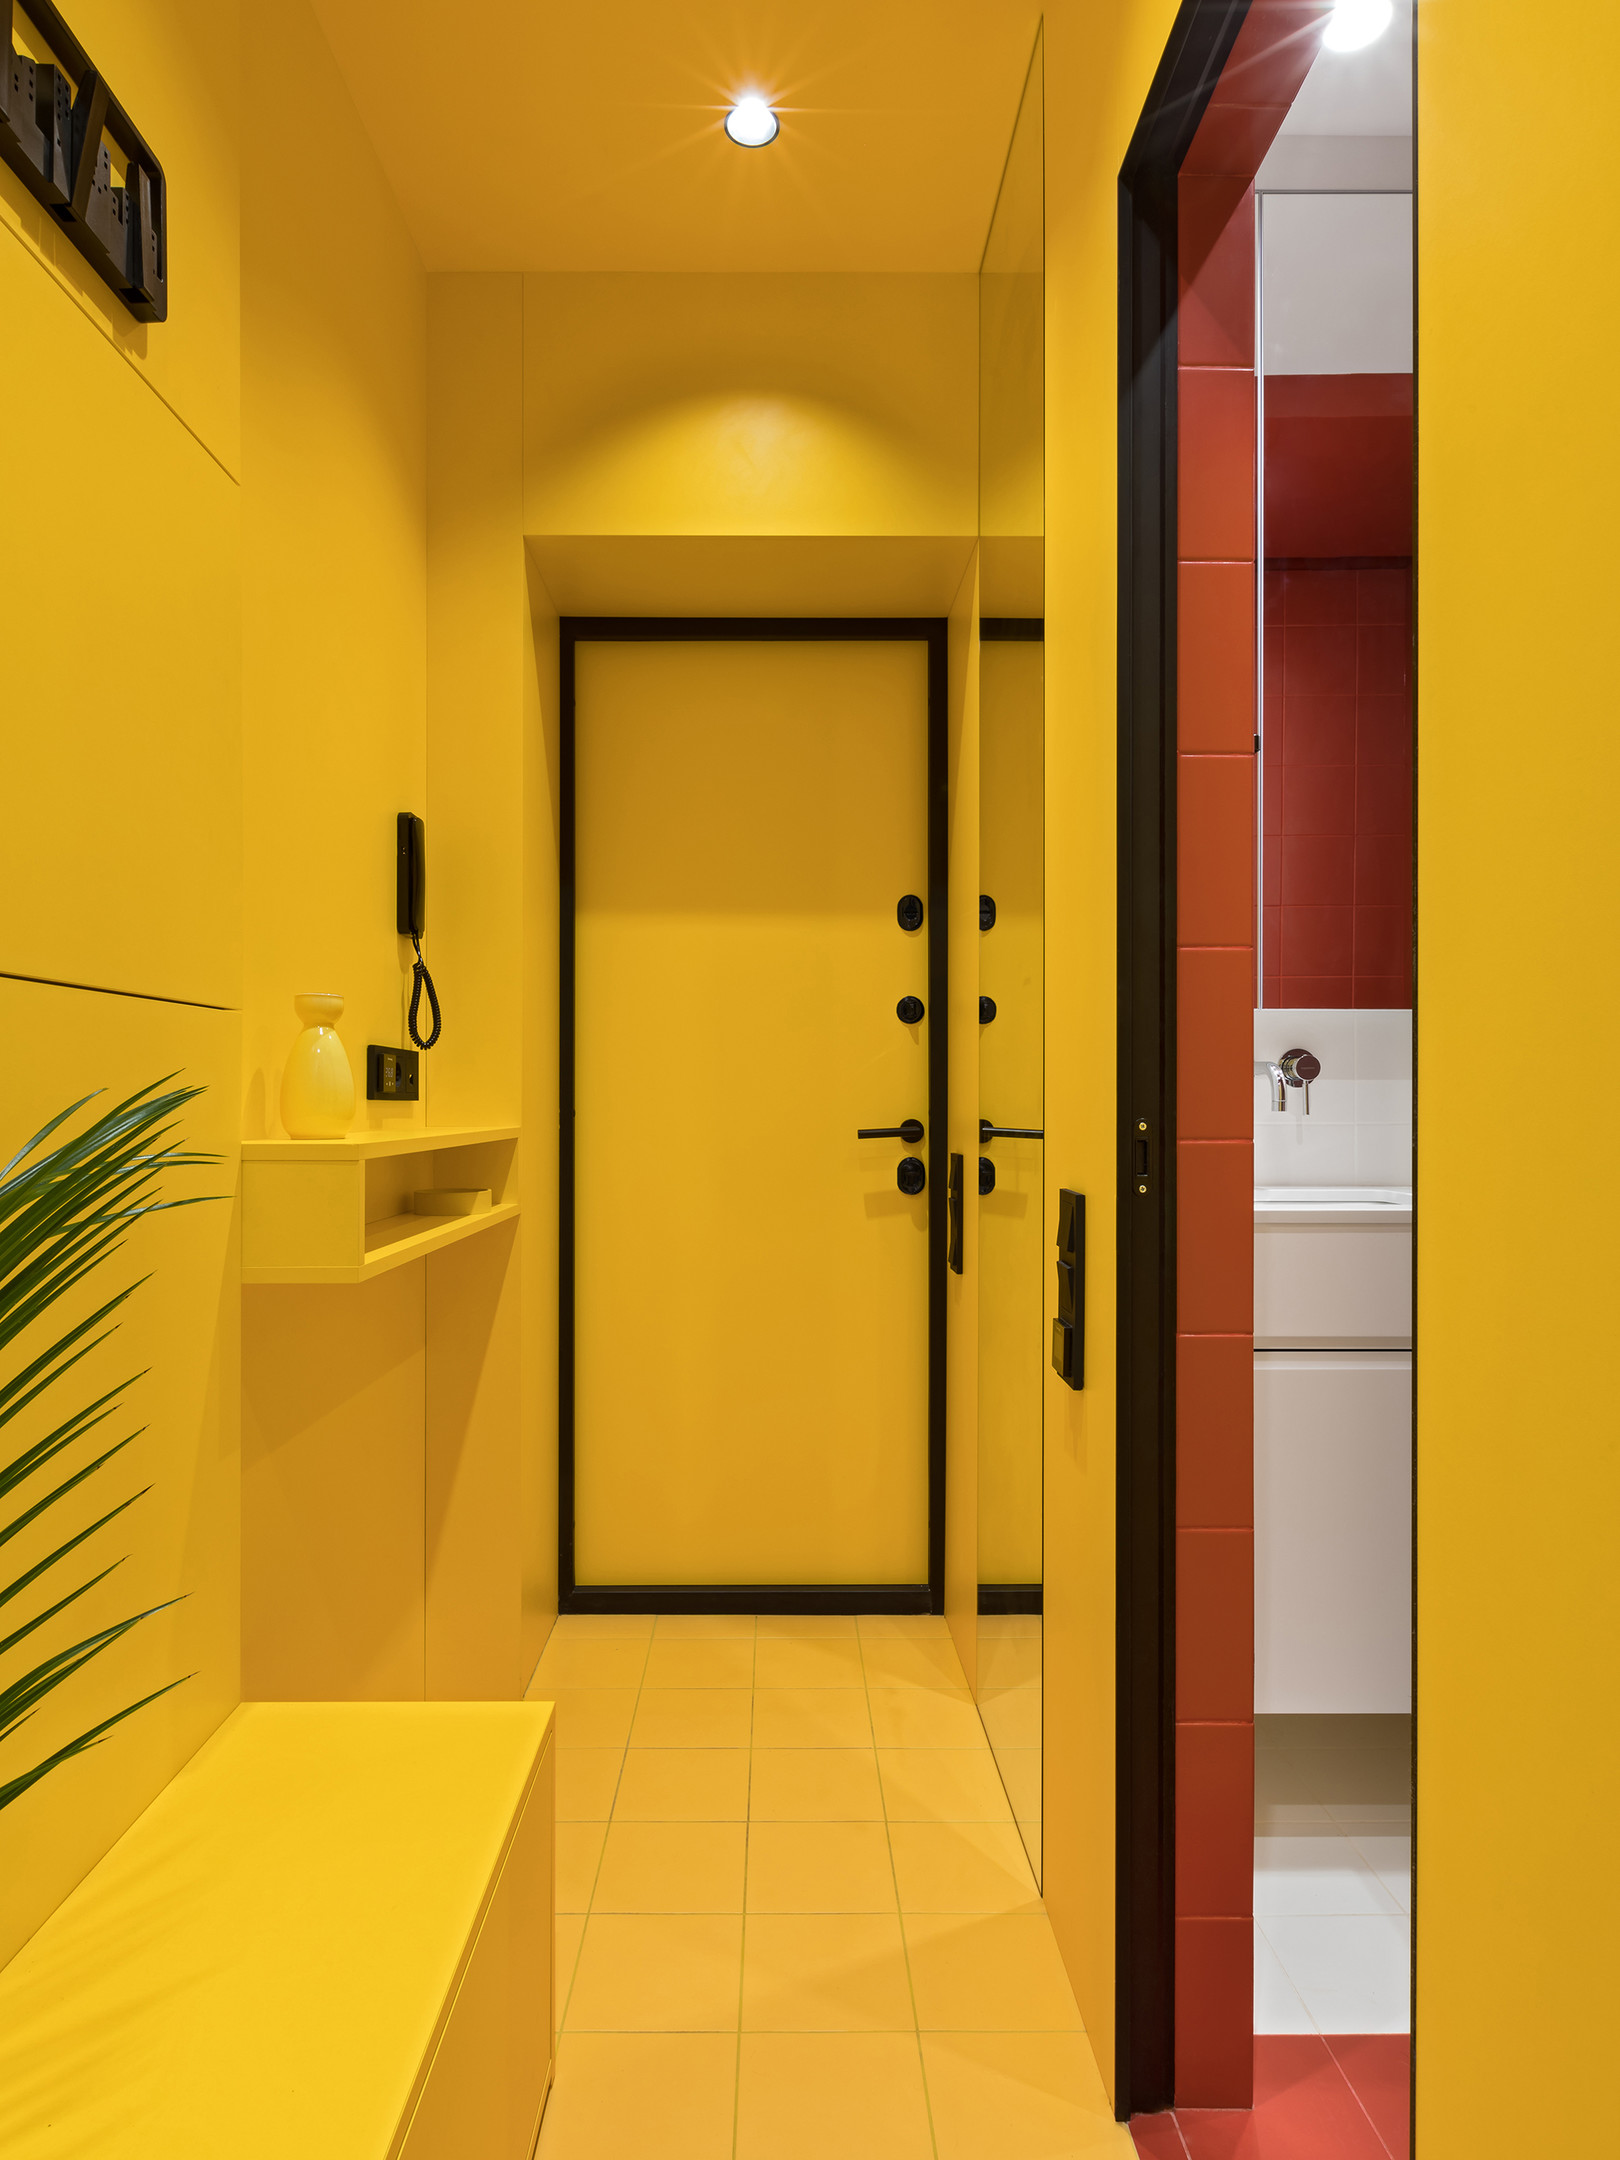 NTK đã rất khéo léo trong việc lựa chọn sắc màu cho căn hộ. Chúng không chỉ giúp phân vùng bằng thị giác mà còn là 'chìa khóa' đem lại cảm xúc cho từng không gian. Phòng tắm thường mang cảm giác lạnh lẽo, thế nên khi chọn màu vàng kết hợp đèn chiếu sáng và cây cảnh trang trí, trông nó ấm cúng và sinh động hơn rất nhiều.